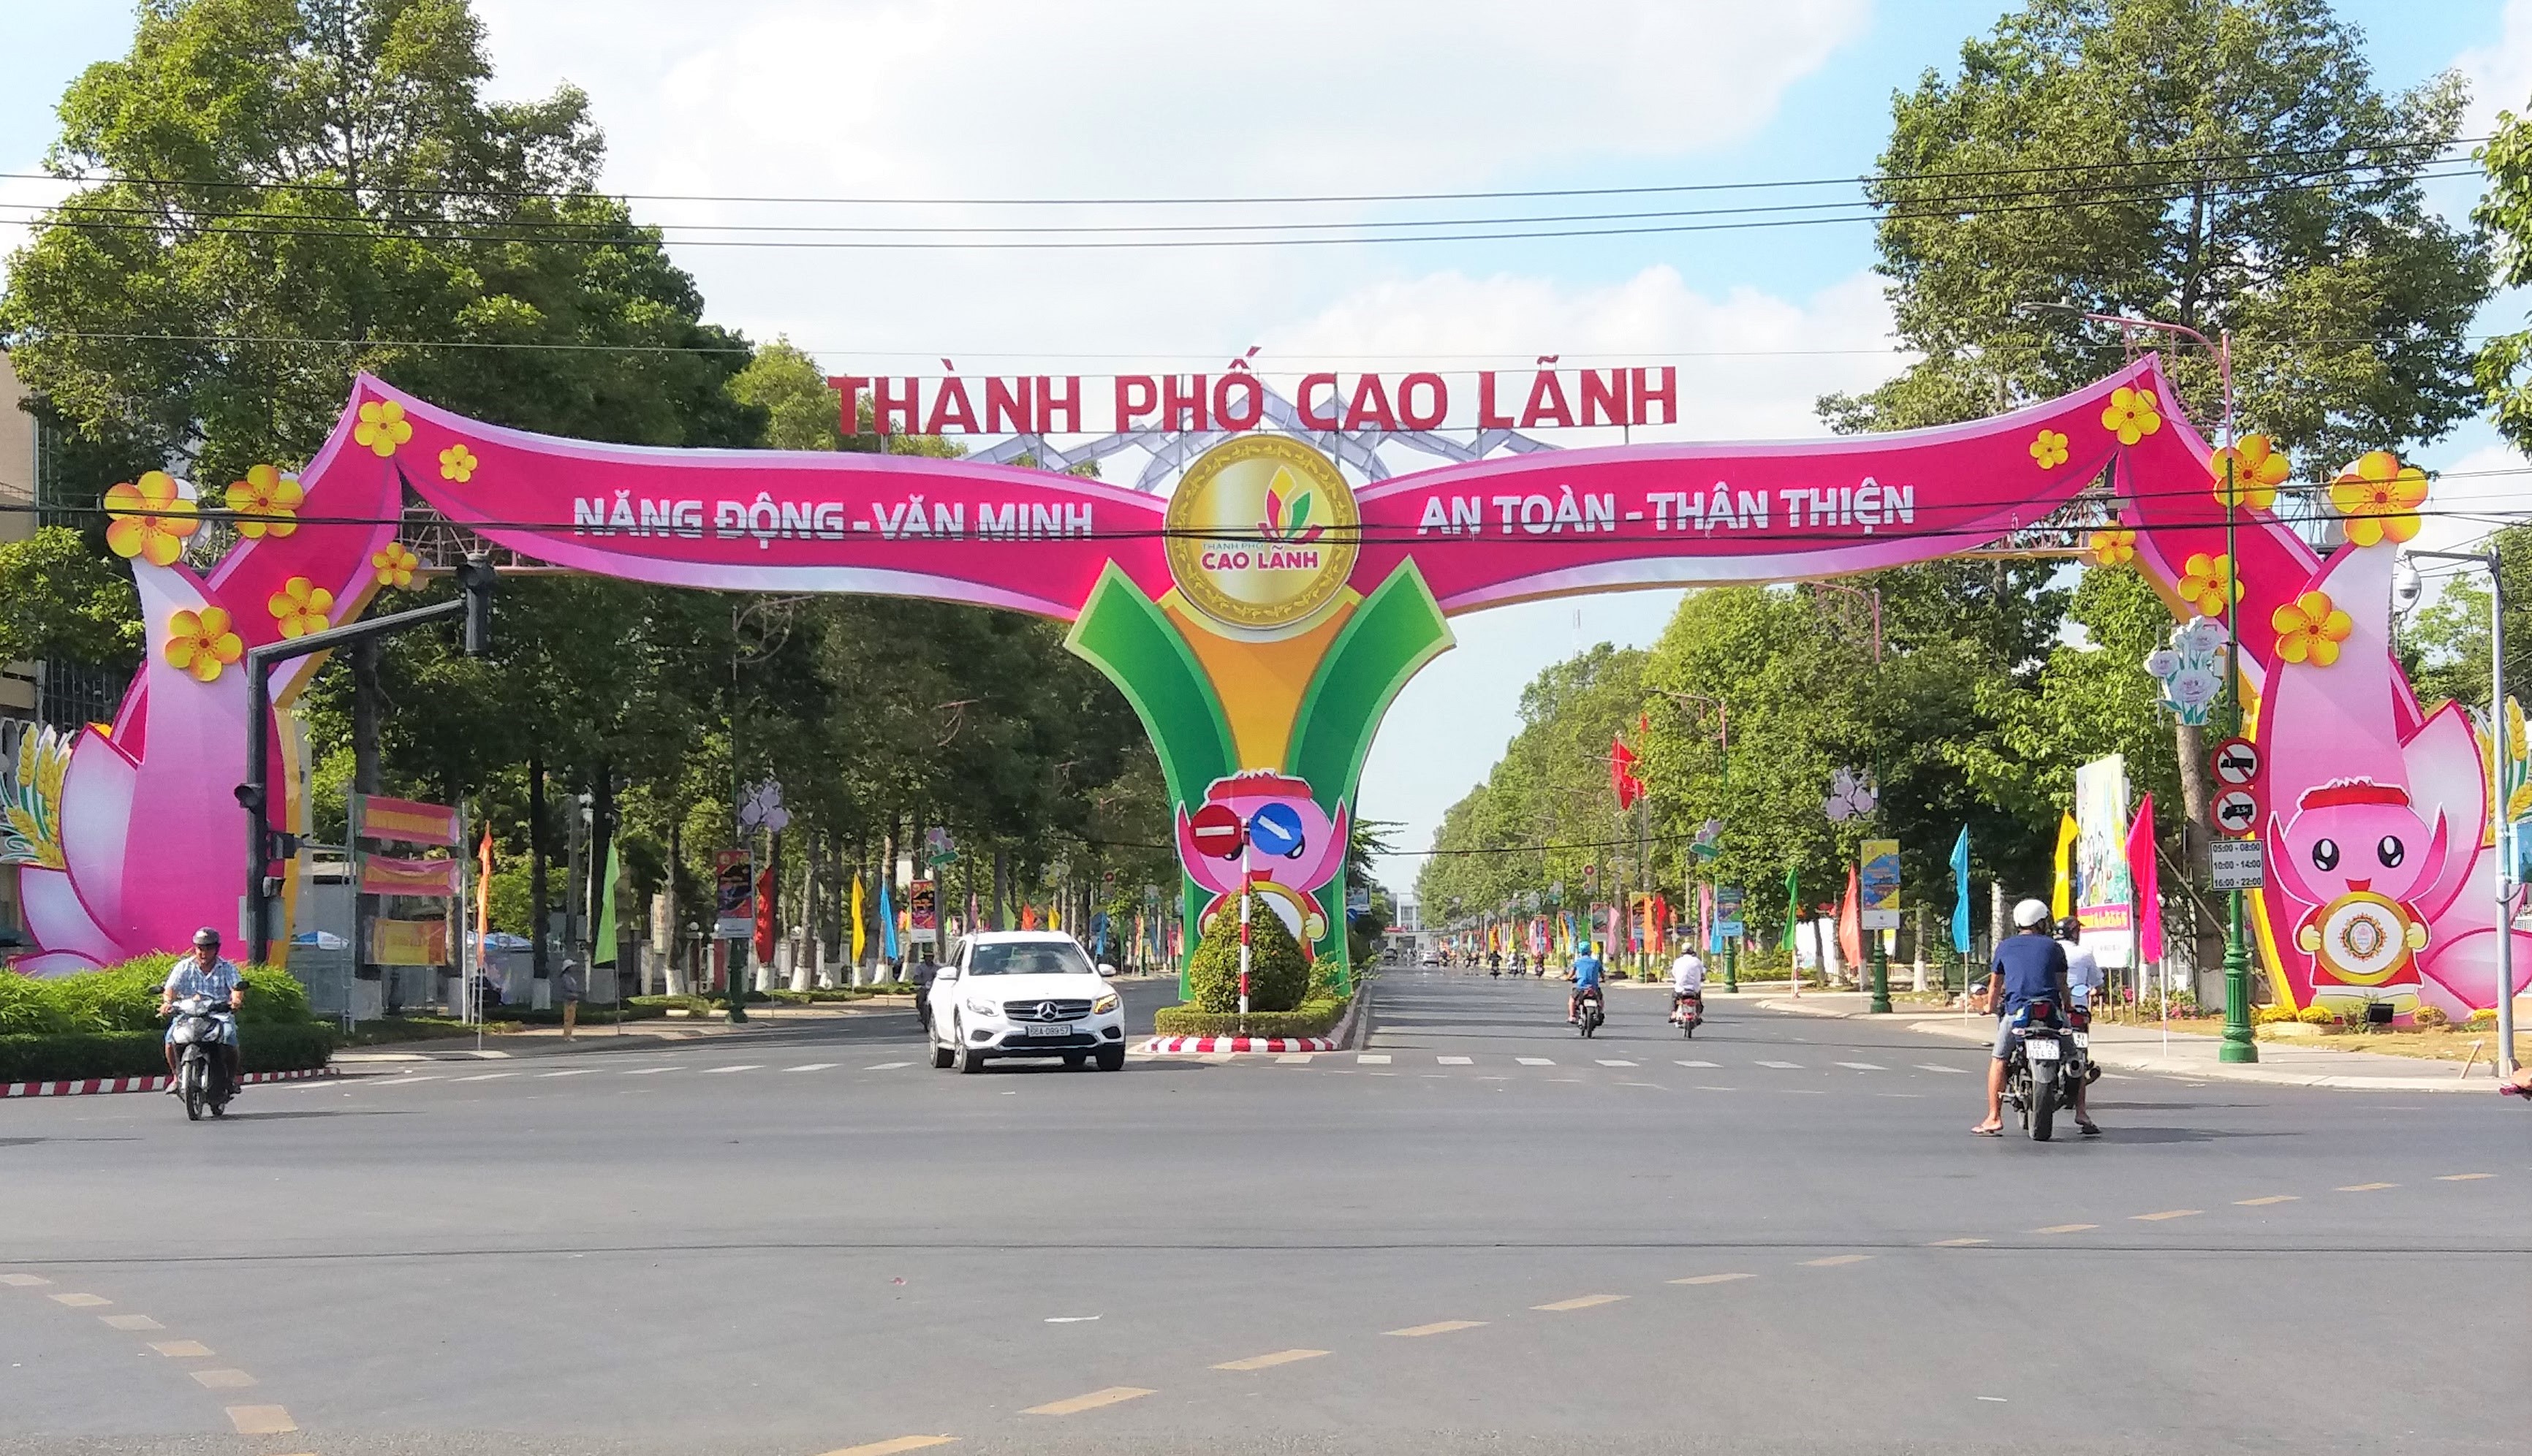 Vietnam’s festive season